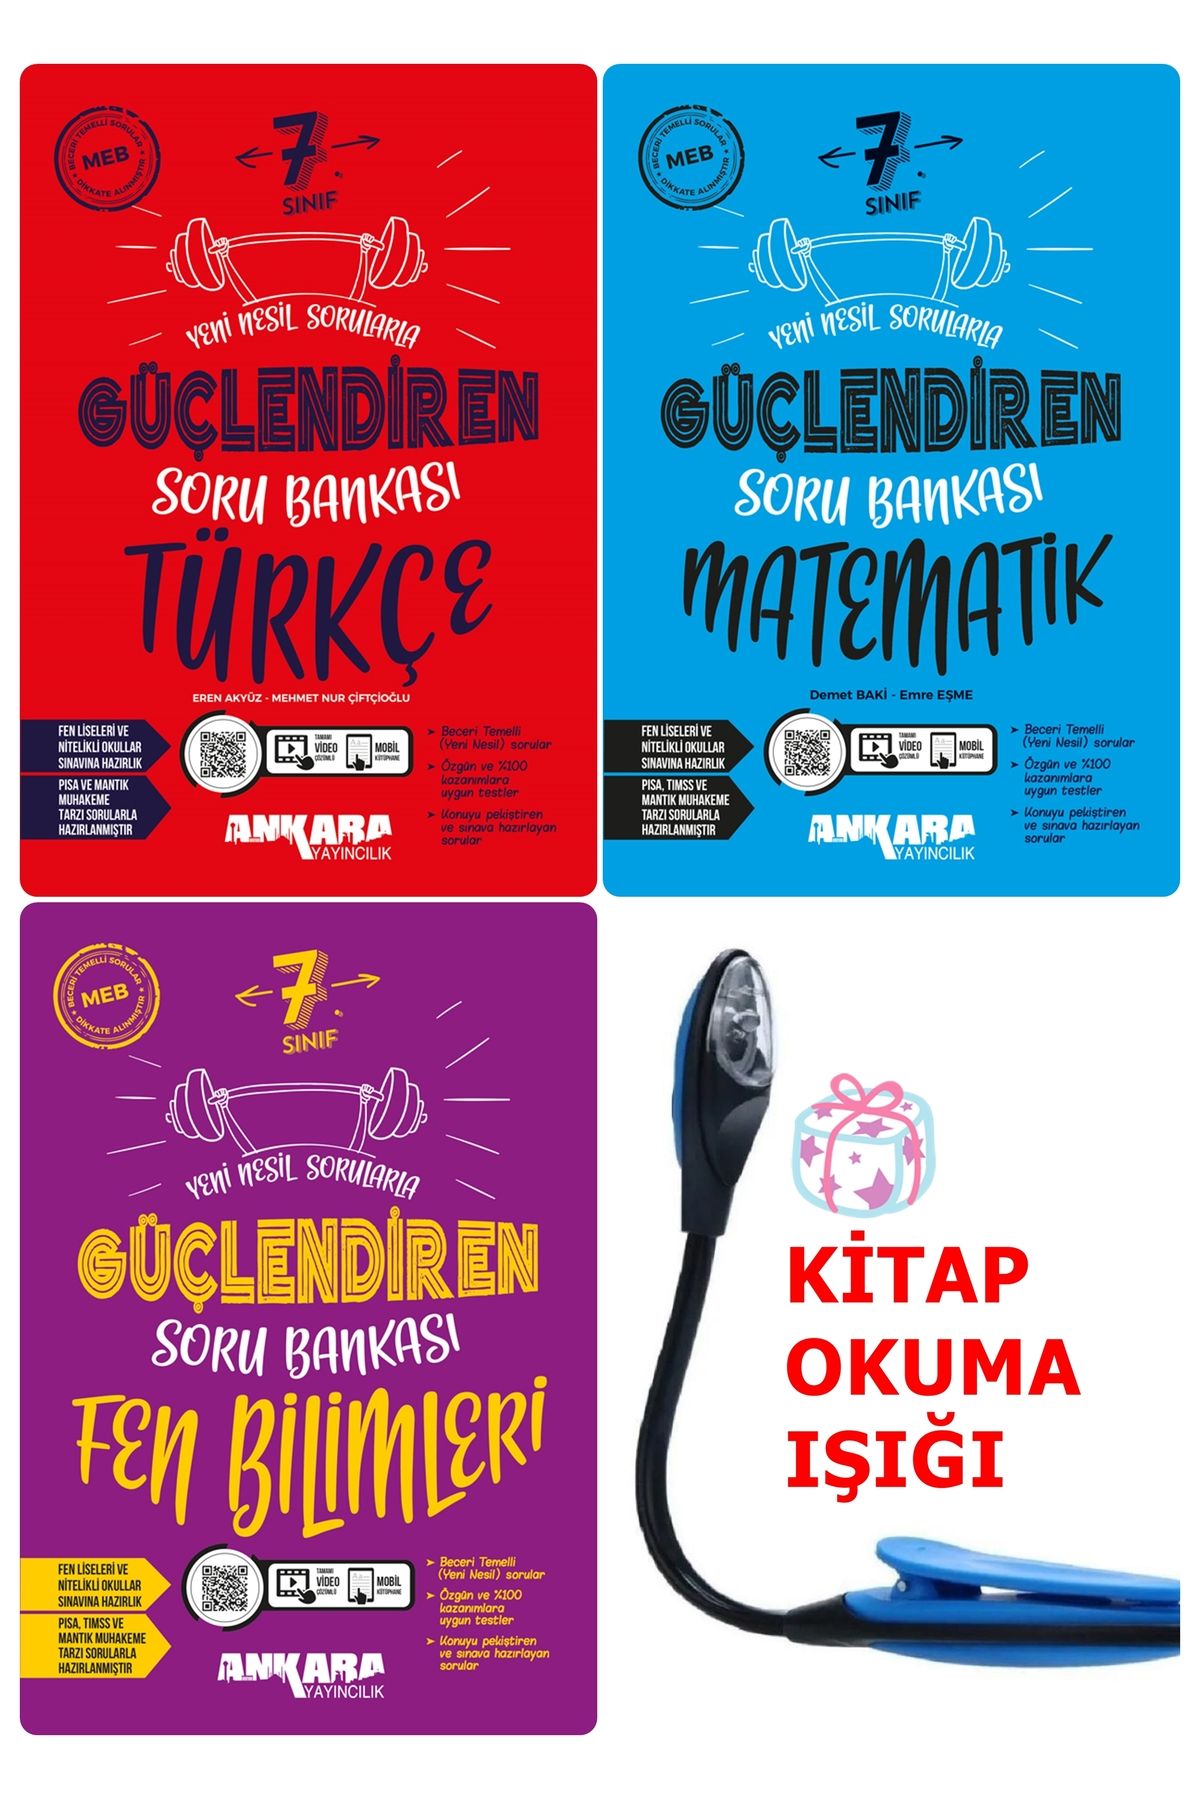 Ankara Yayıncılık 7 Sınıf Türkçe-Matematik-Fen Güçlendiren Soru Bankası Set + Kitap Okuma Işığı Hediye